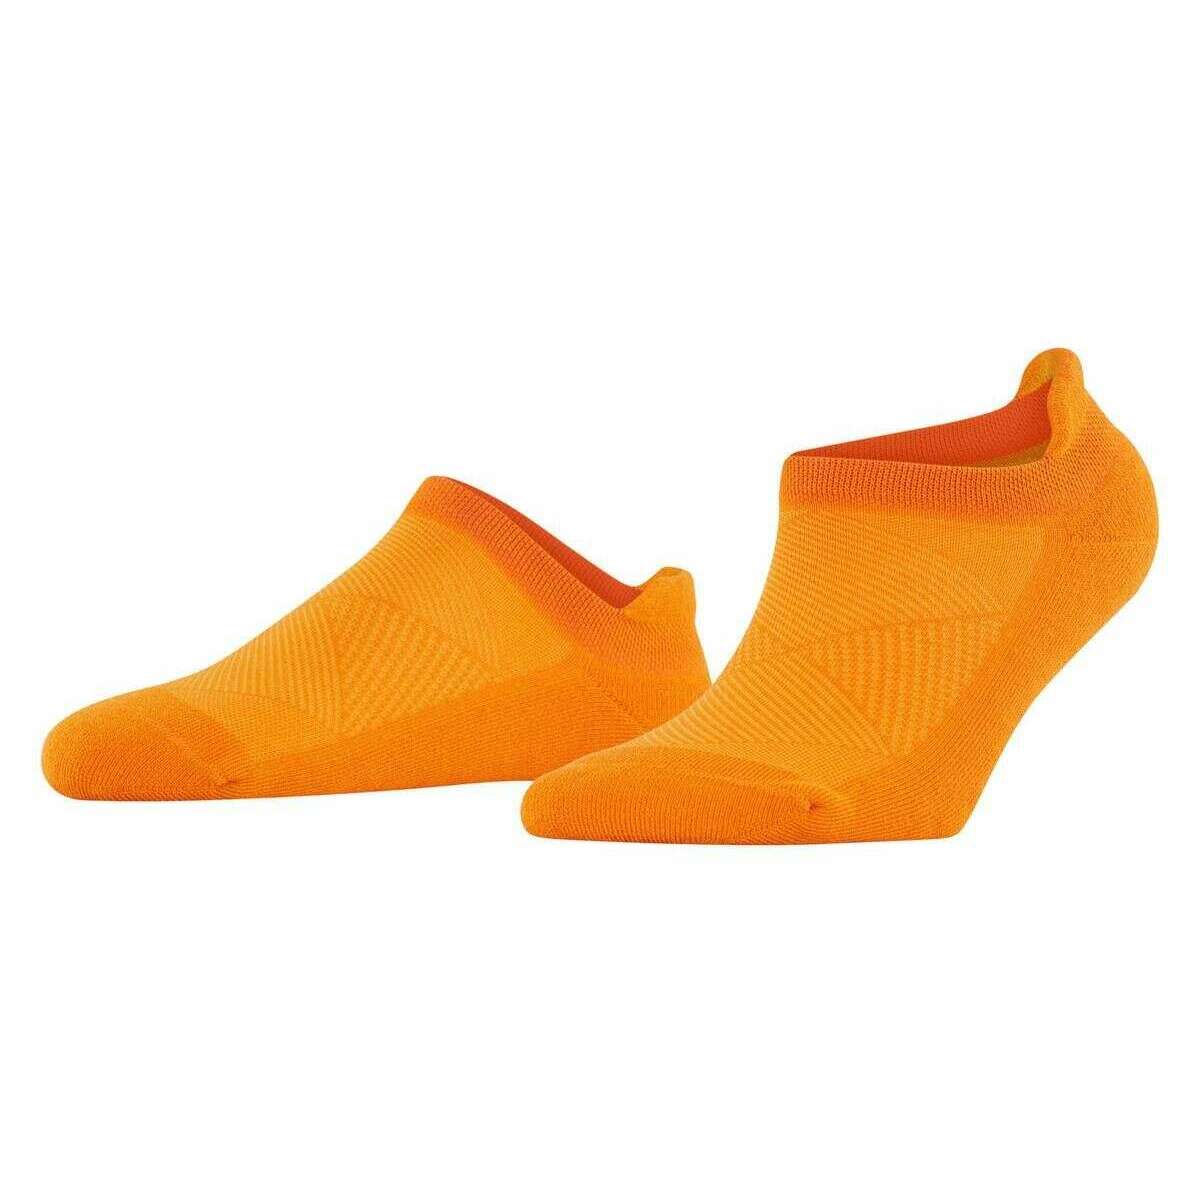 Burlington Athleisure Sneaker Socks - Autumn Leaf Orange